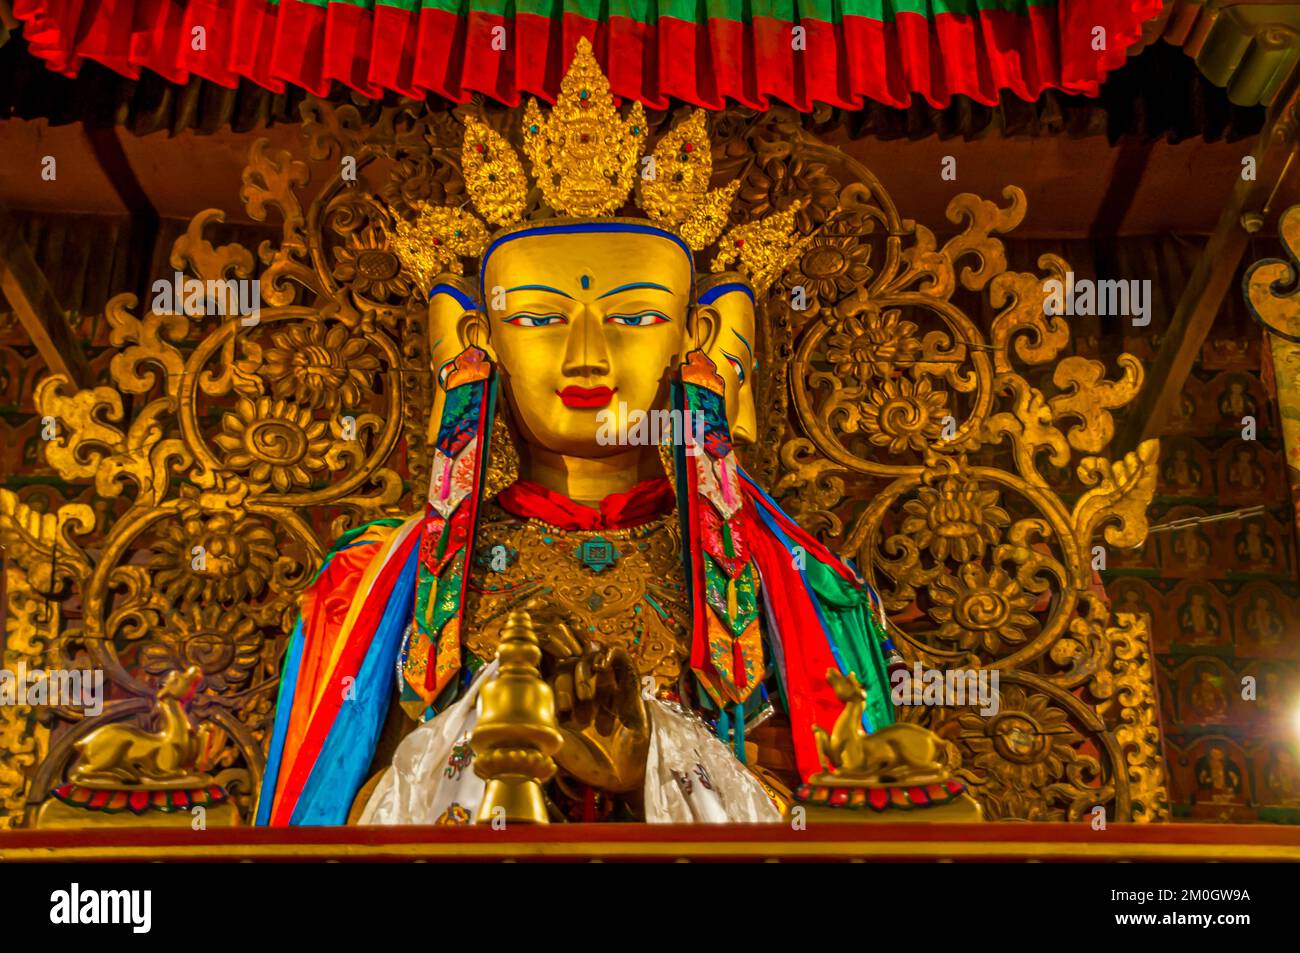 Buddhas in the Kumbum in the monastery of Gyantse, Tibet, Asia Stock Photo